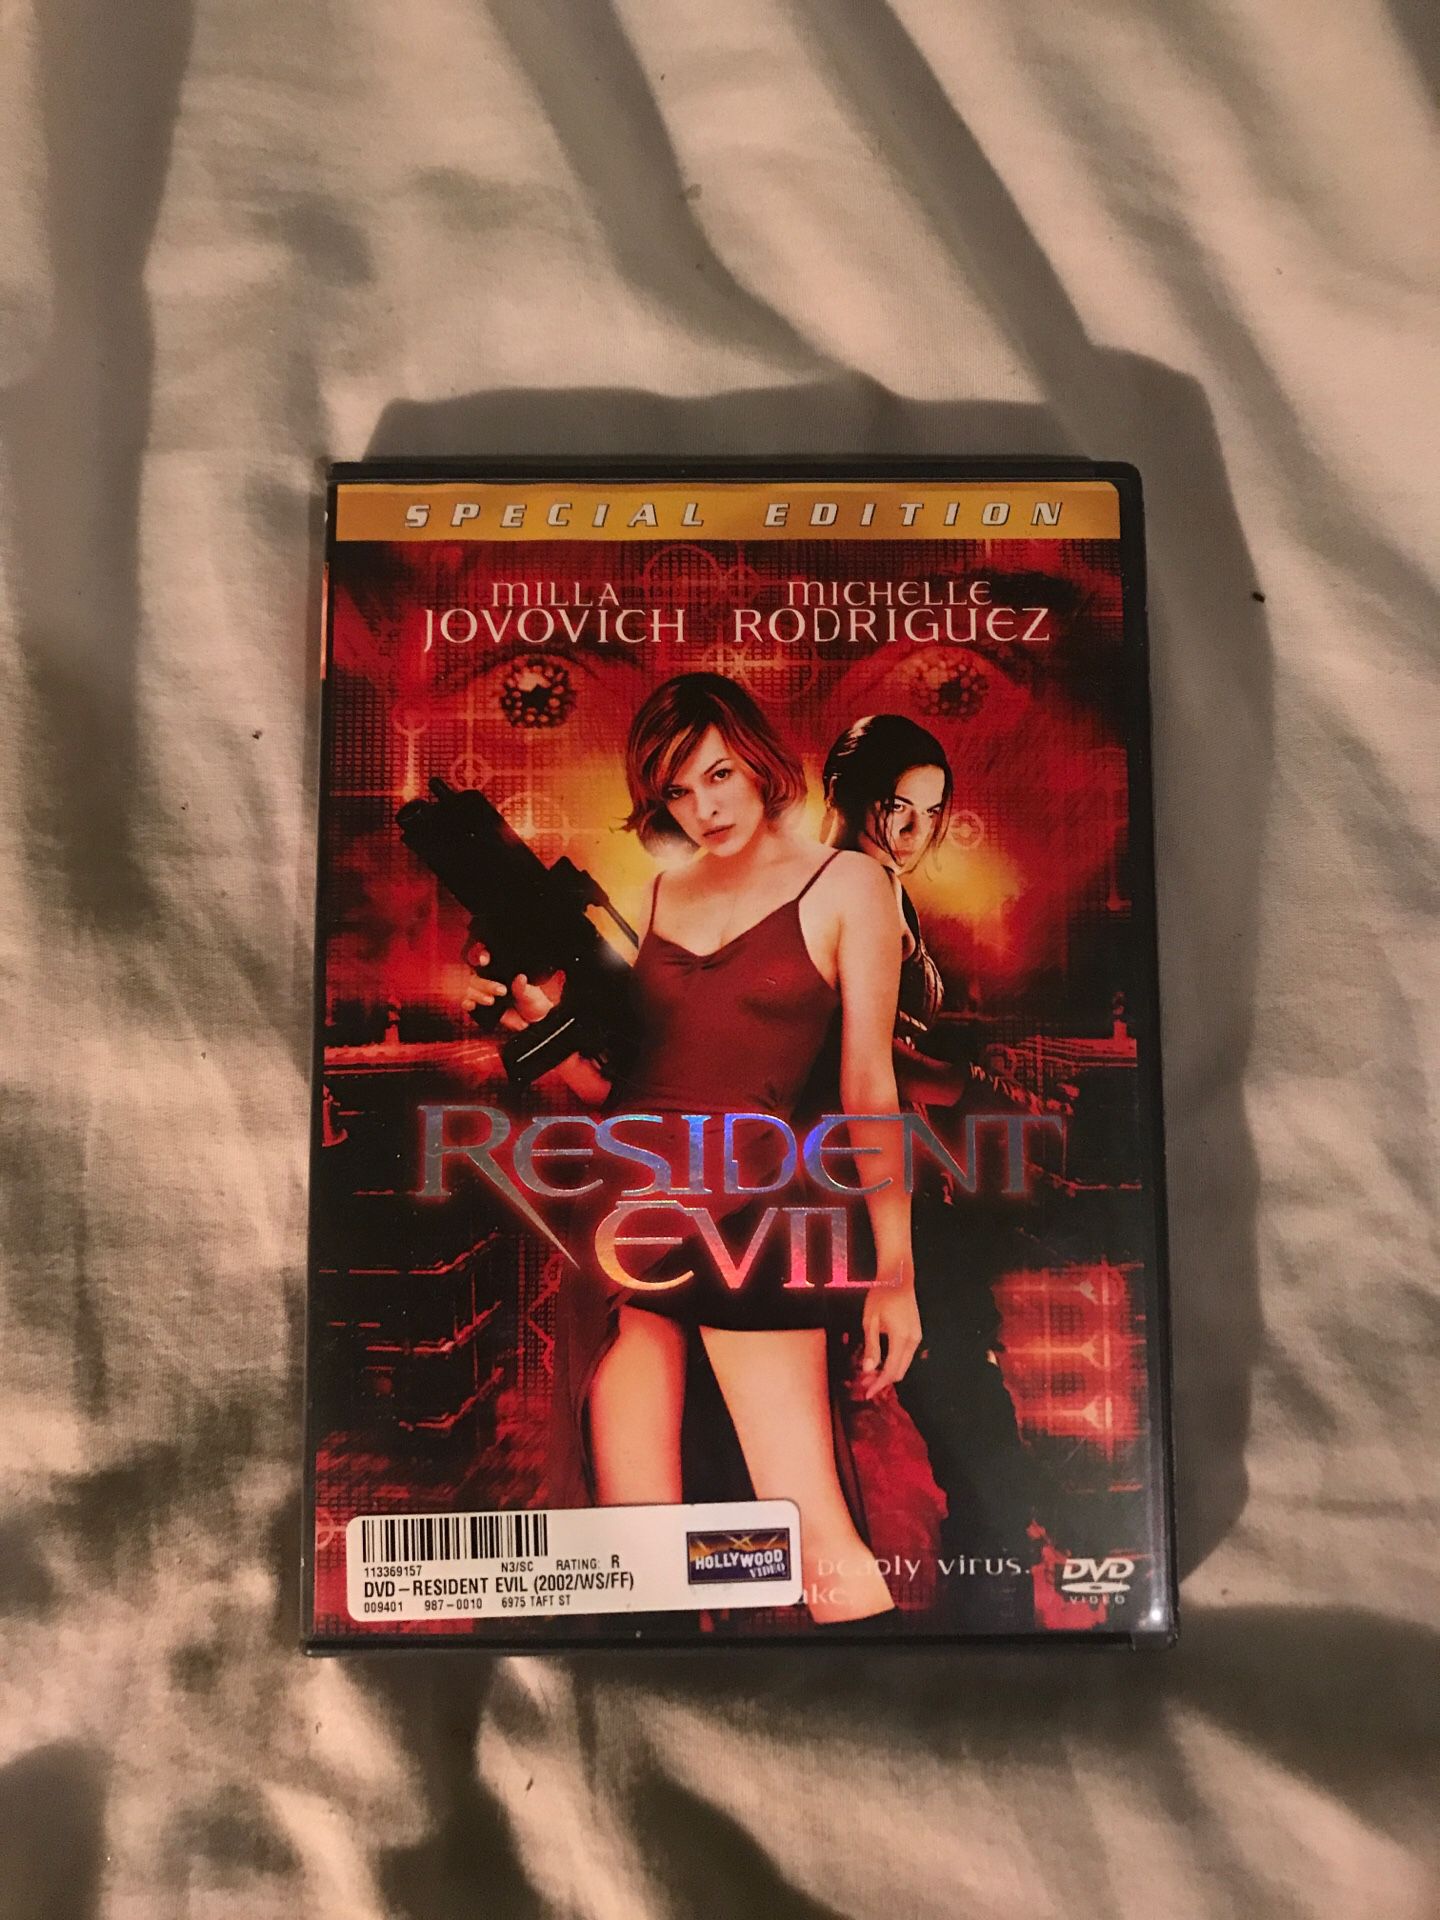 Resident Evil dvd player